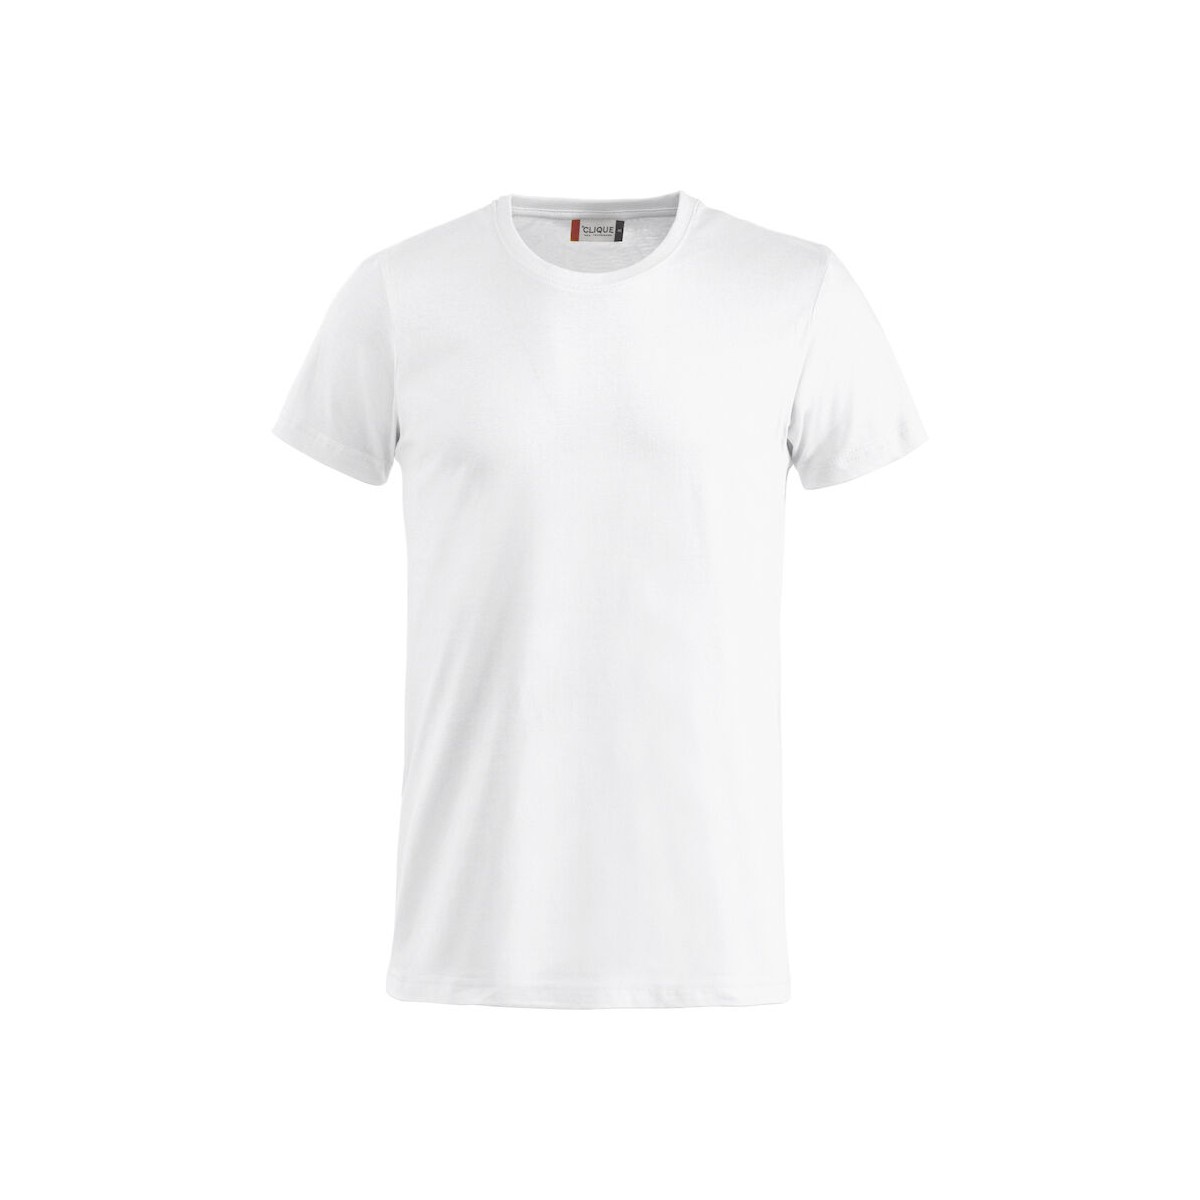 T-shirt 100% coton - CLIQUE - Coupe homme - Couleur blanc - Personnalisable en petite quantité